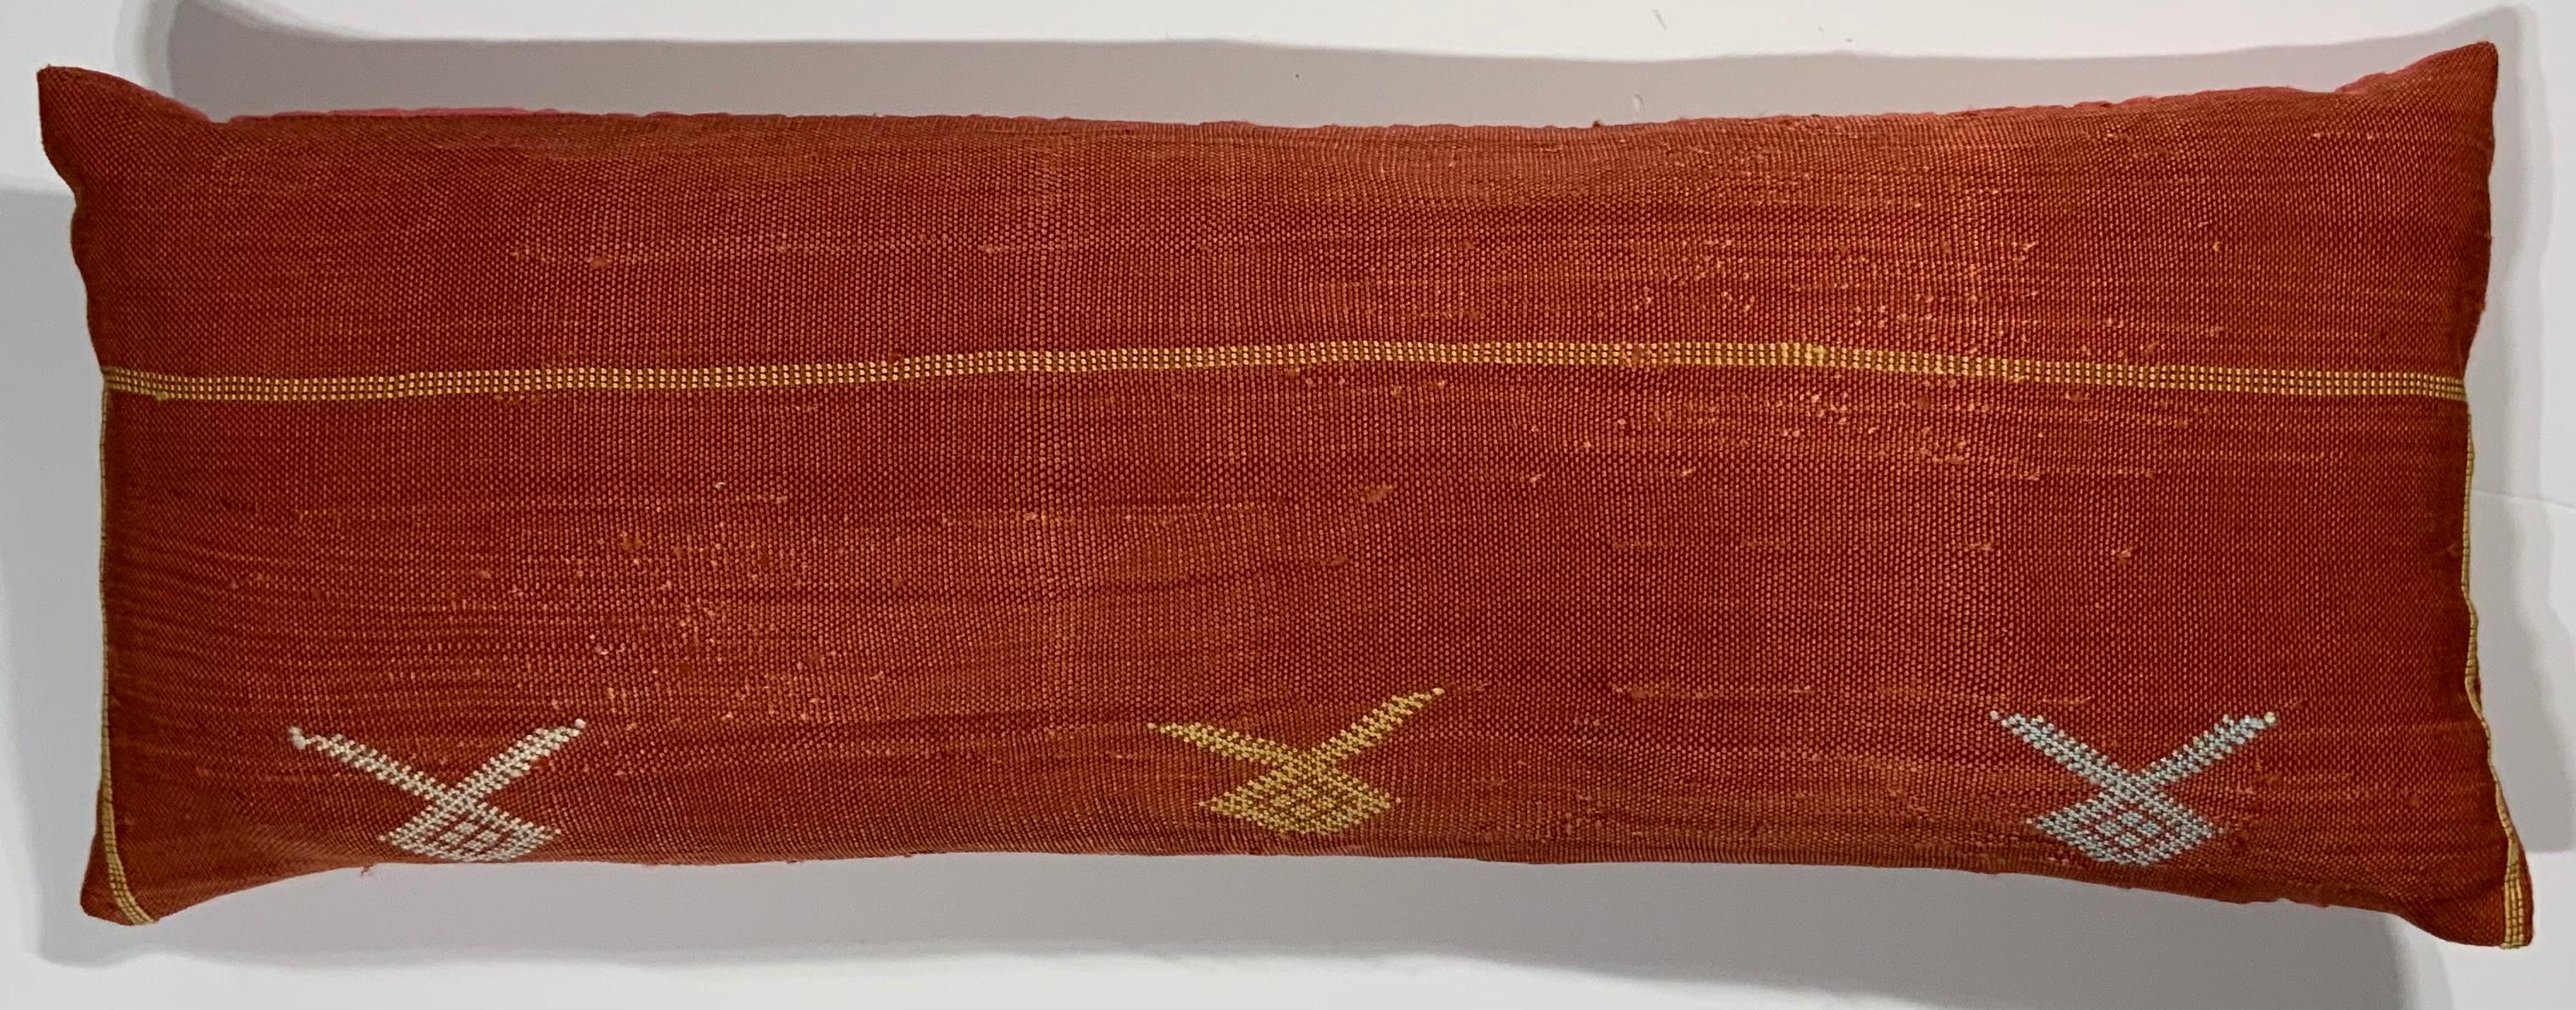 Magnifique oreiller en textile tissé à plat à la main avec un motif géométrique multicolore sur un fond rouge, un support en soie fine, un insert en plumes et duvet neufs.